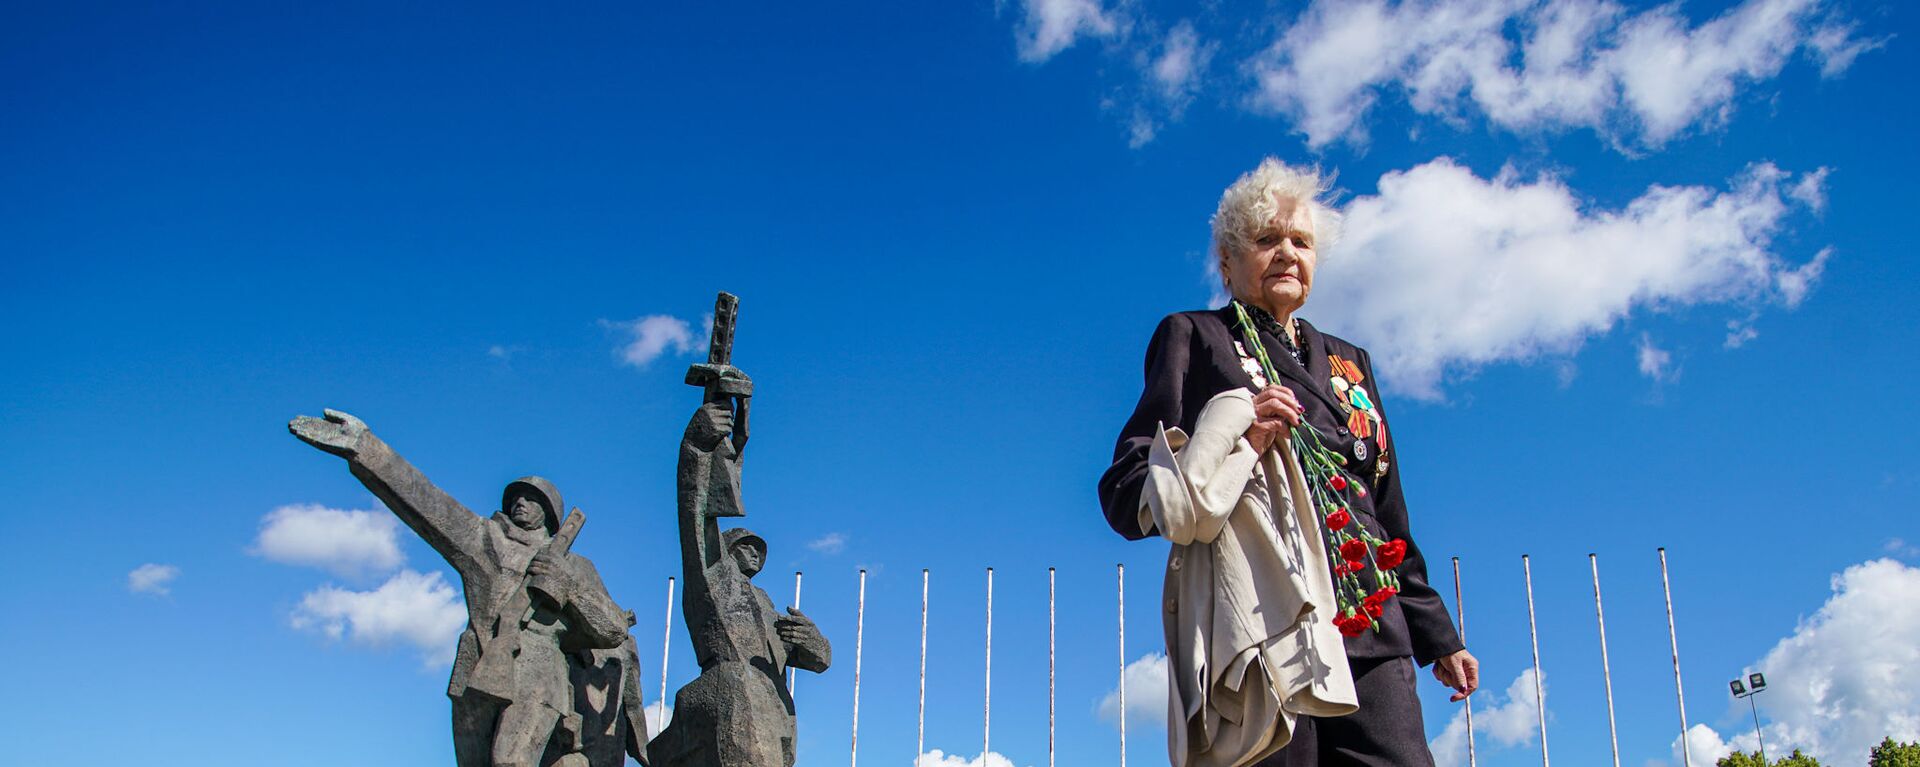 Ветеран у памятника Освободителям Риги - Sputnik Латвия, 1920, 18.09.2019